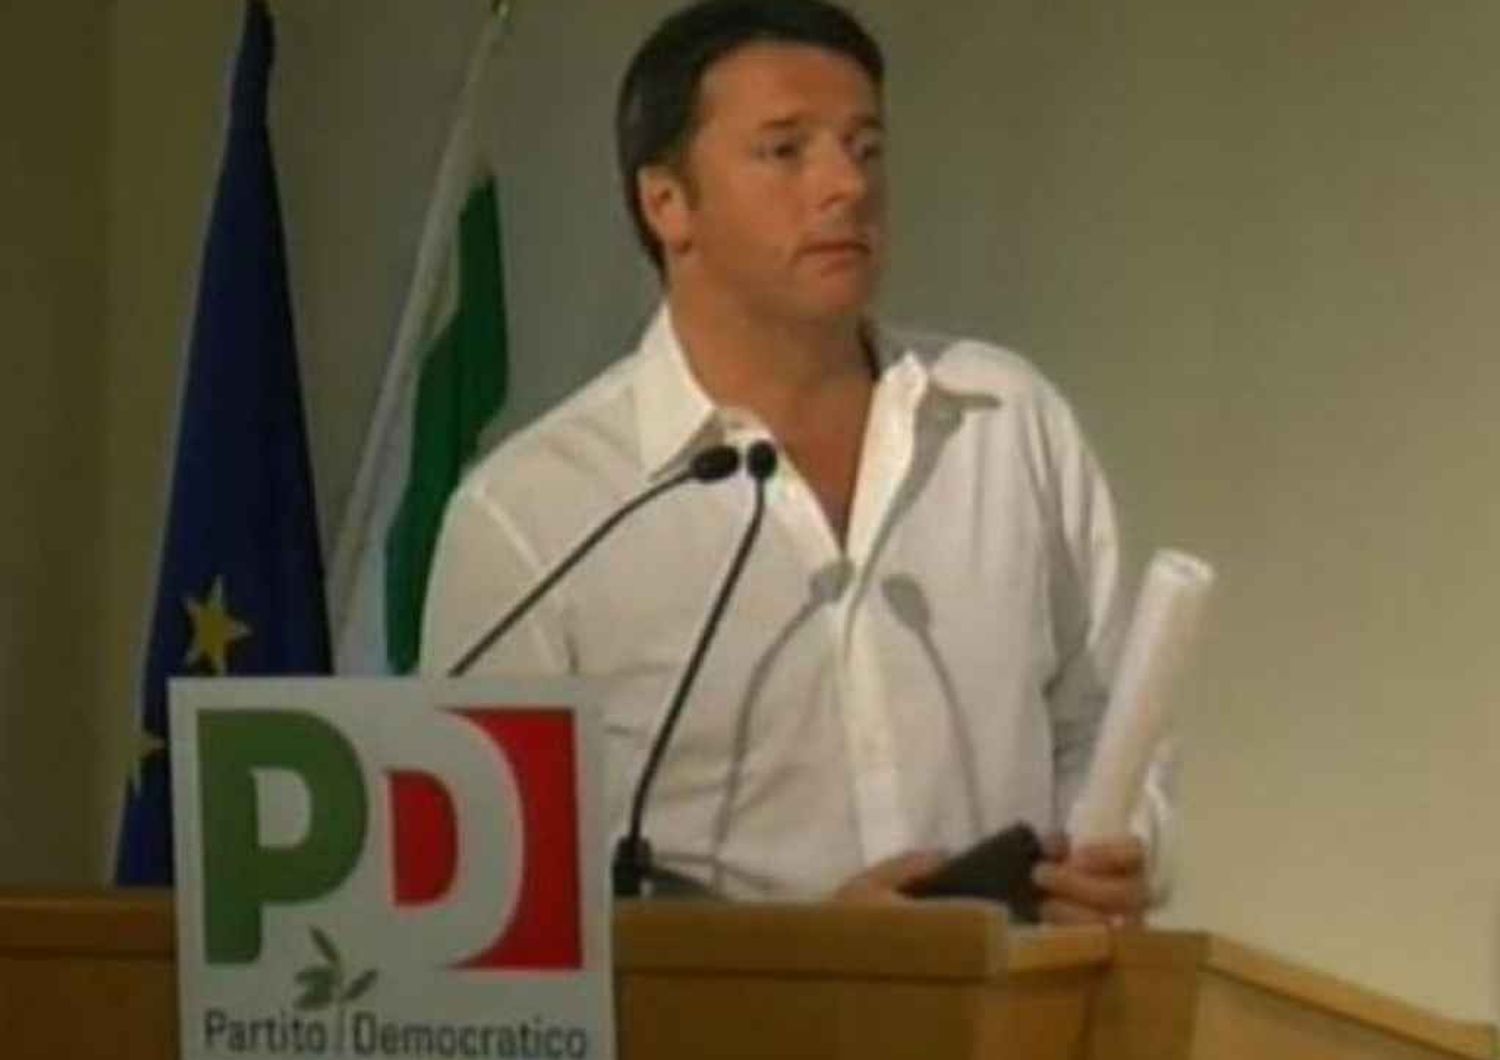 La sfida di Renzi ai sindacati "Non abbiate paura di cambiare"